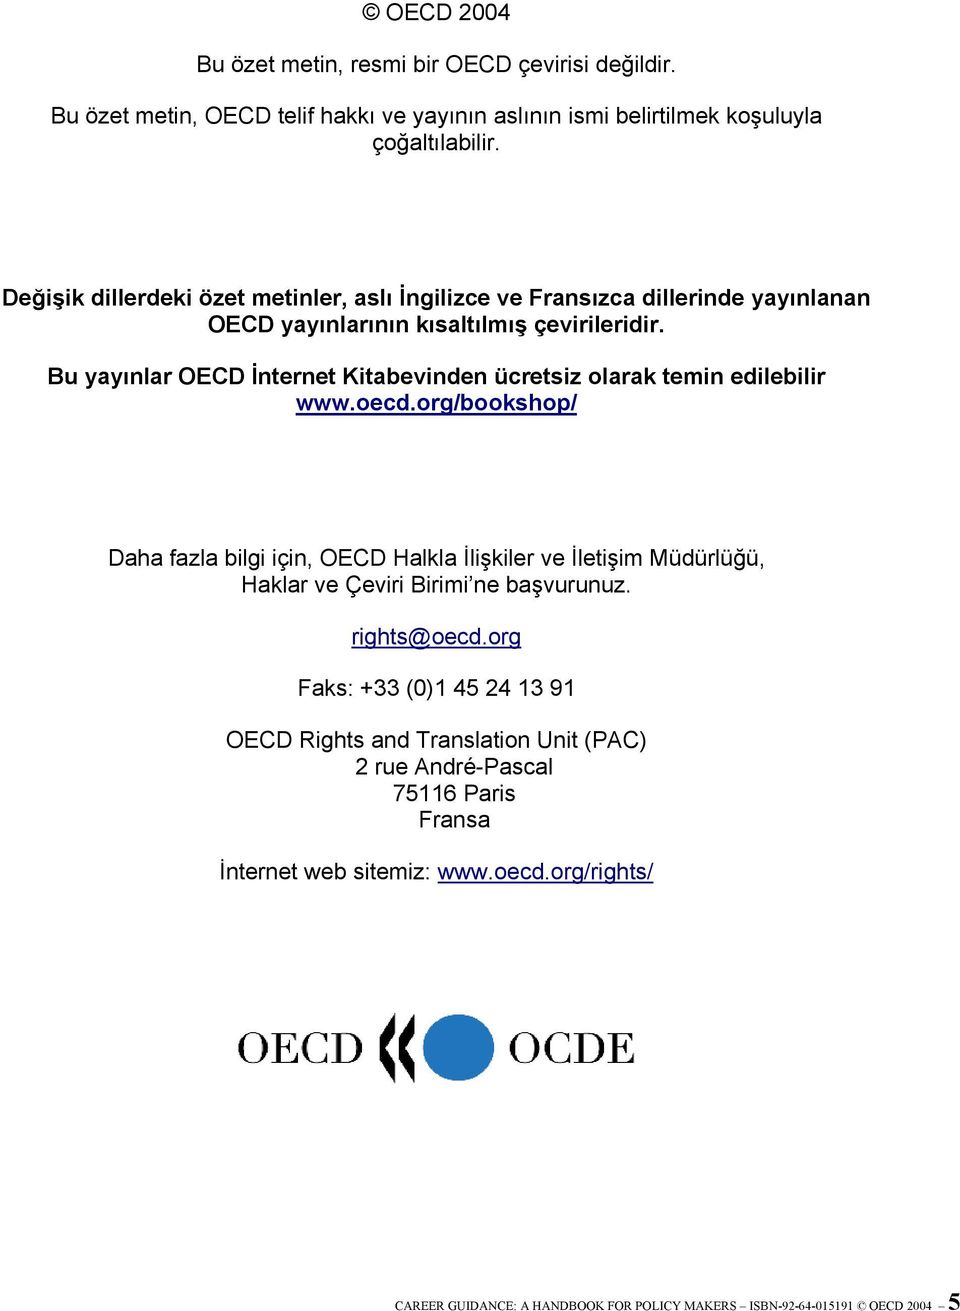 Bu yayınlar OECD İnternet Kitabevinden ücretsiz olarak temin edilebilir www.oecd.